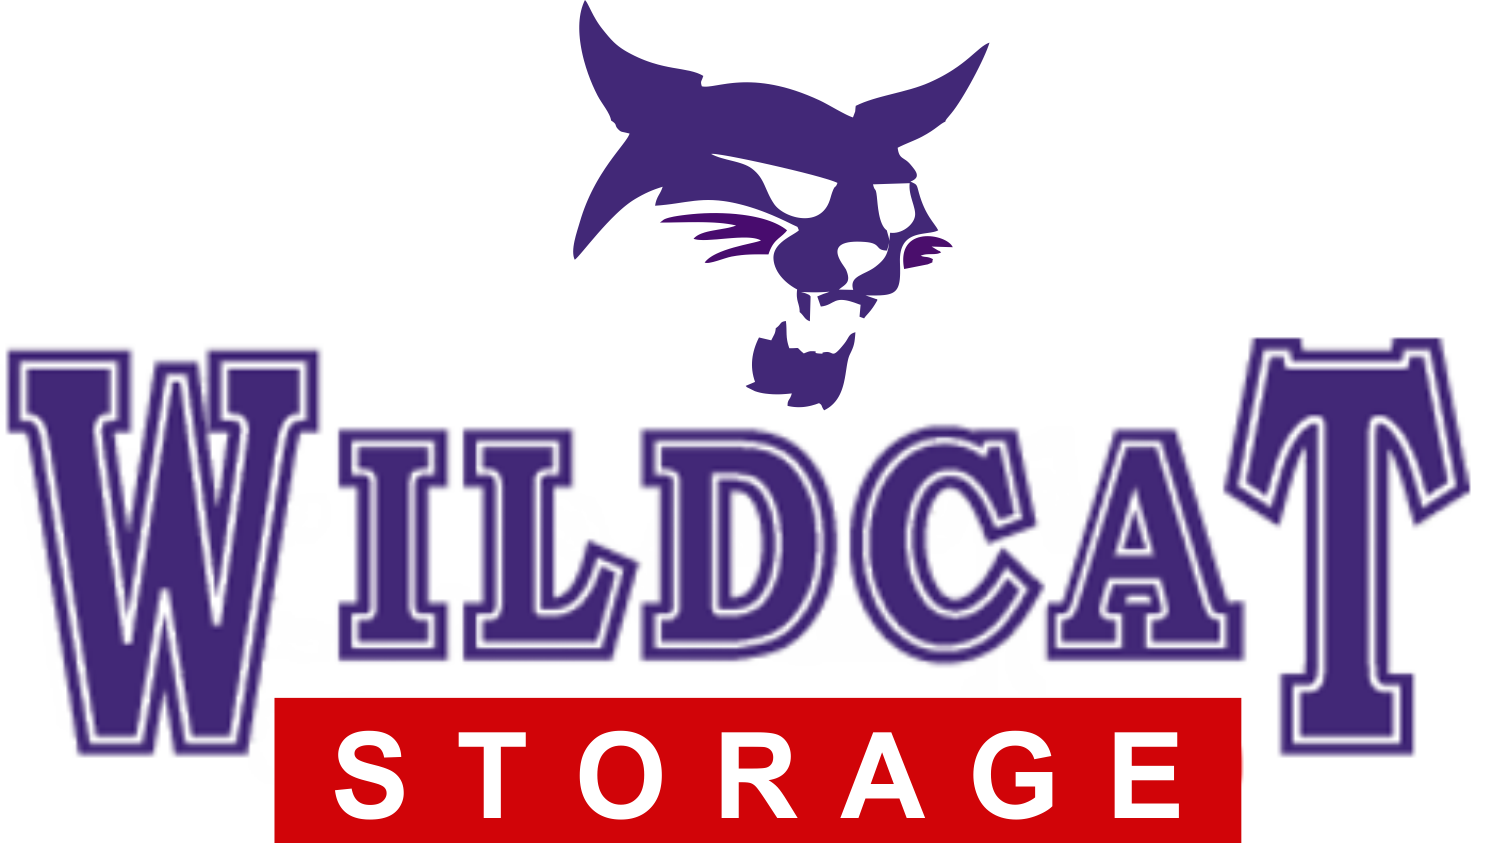 Storage Units Layton Utah logo - Wildcat Storage